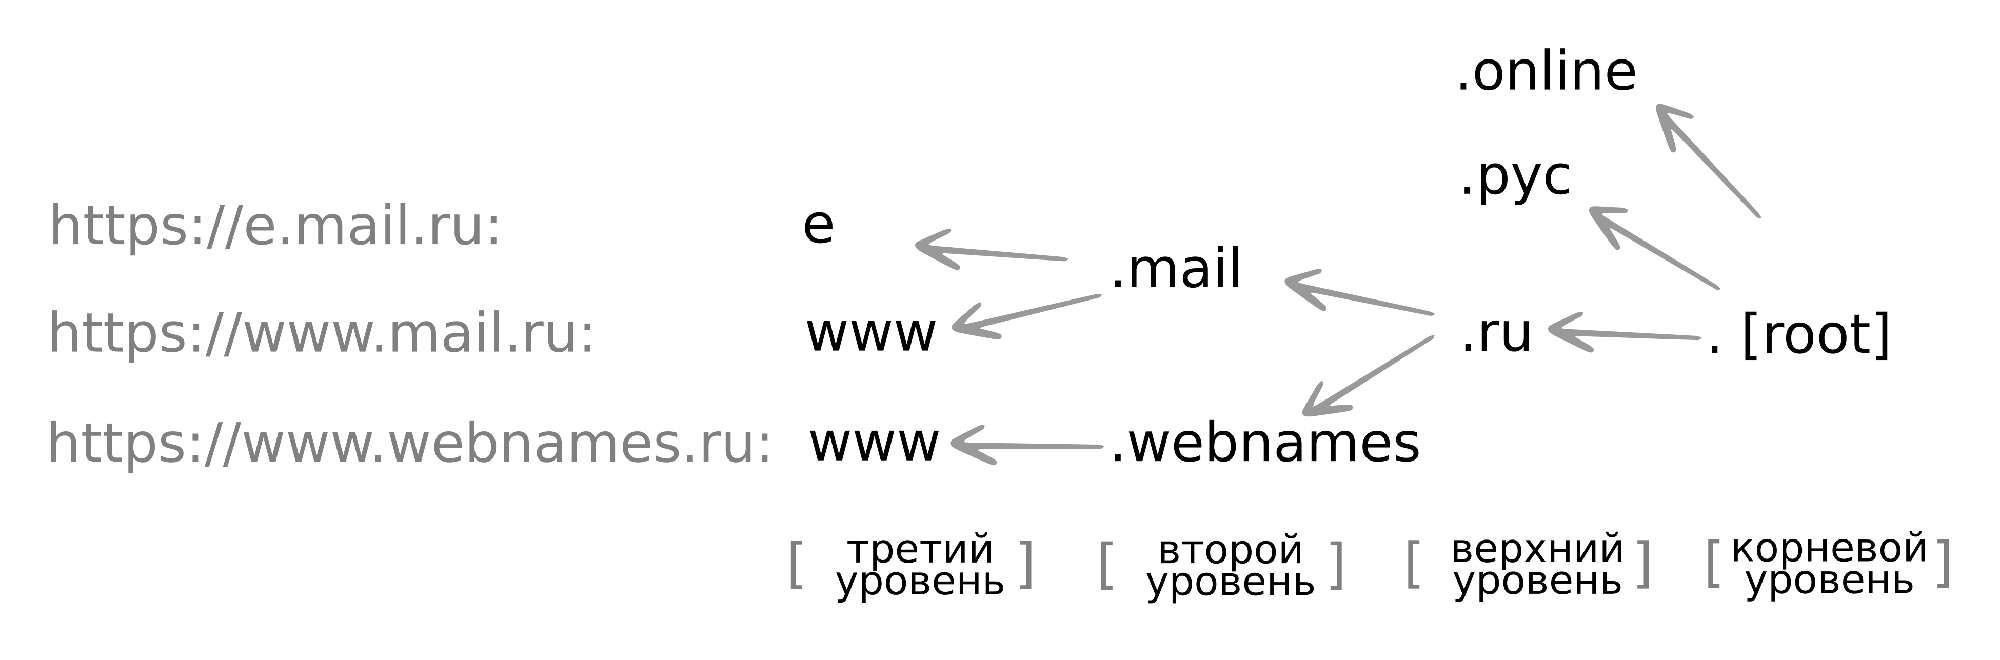 Структура доменных имен